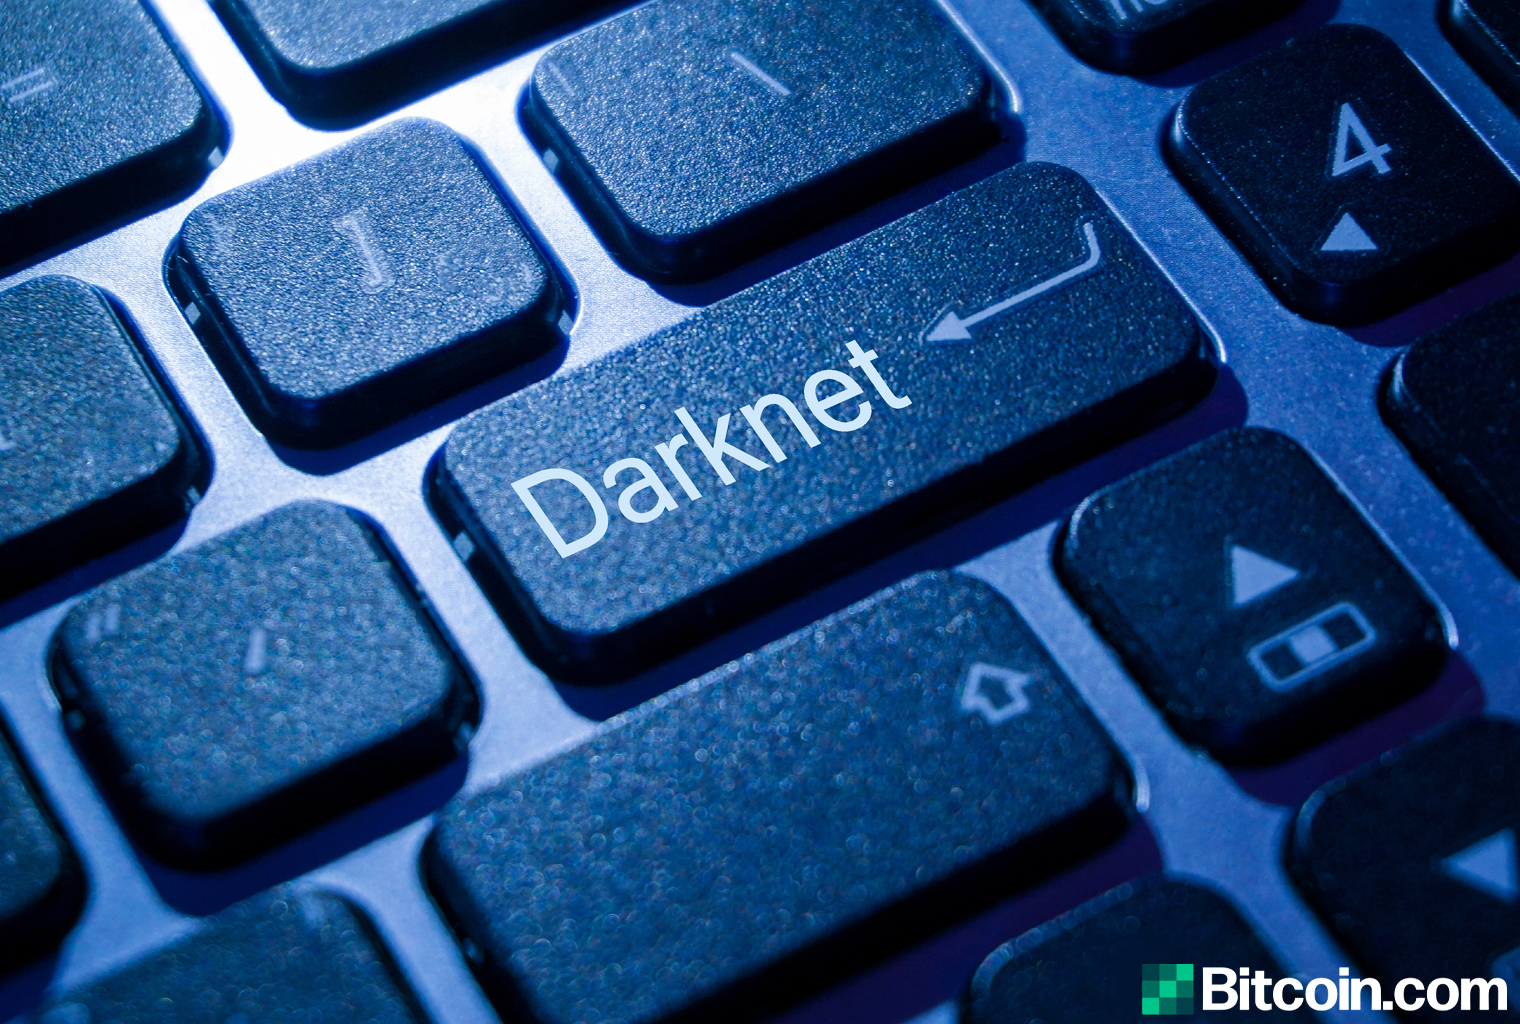 Currently darknet markets